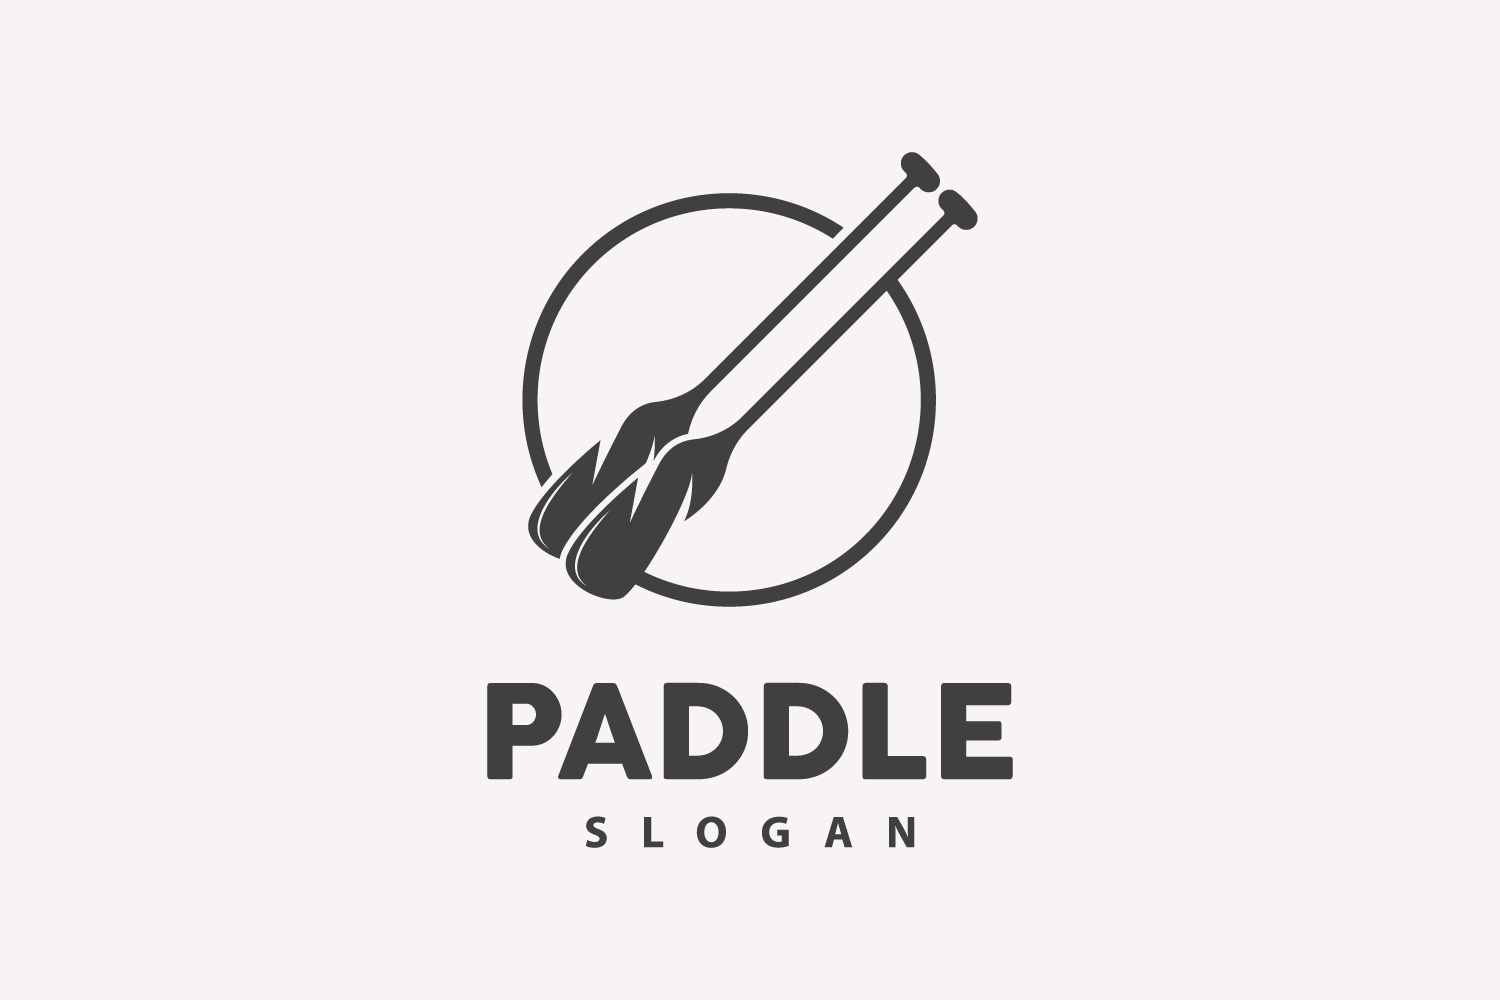 Paddle Logo Boat Design Vector Illustration DesignV24